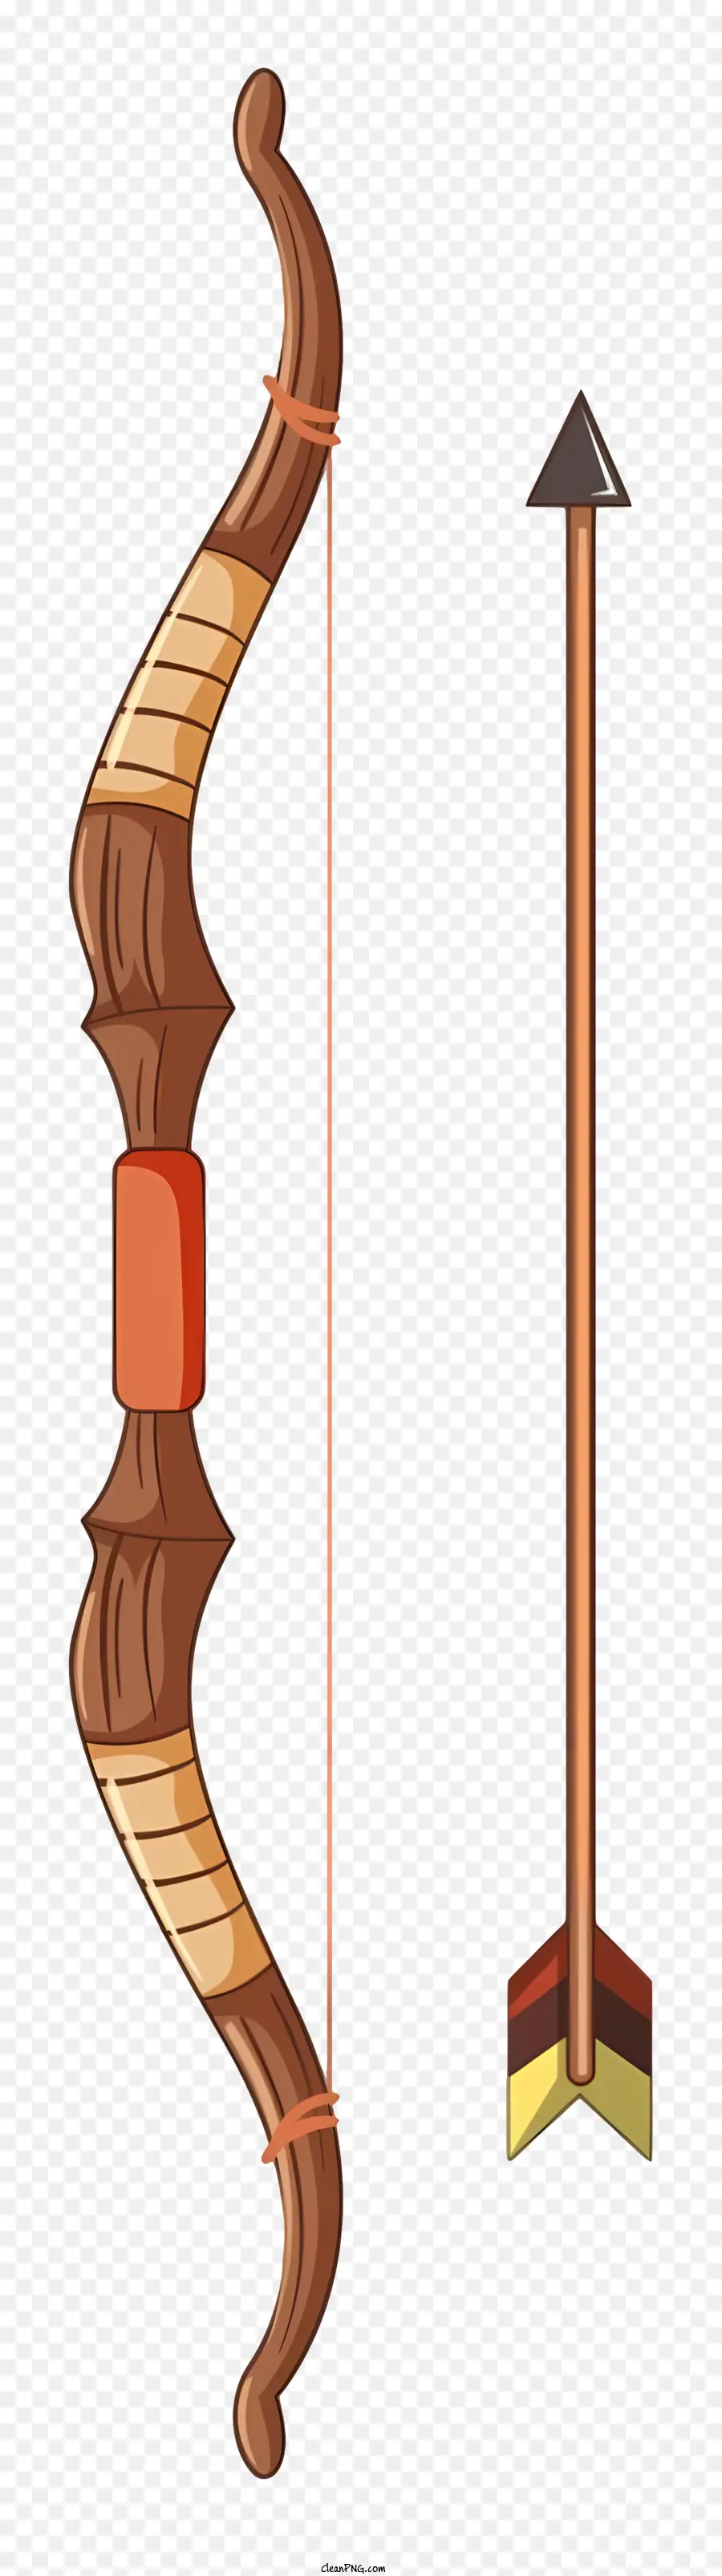 freccia - Freccia con corpo in legno e piuma attaccate